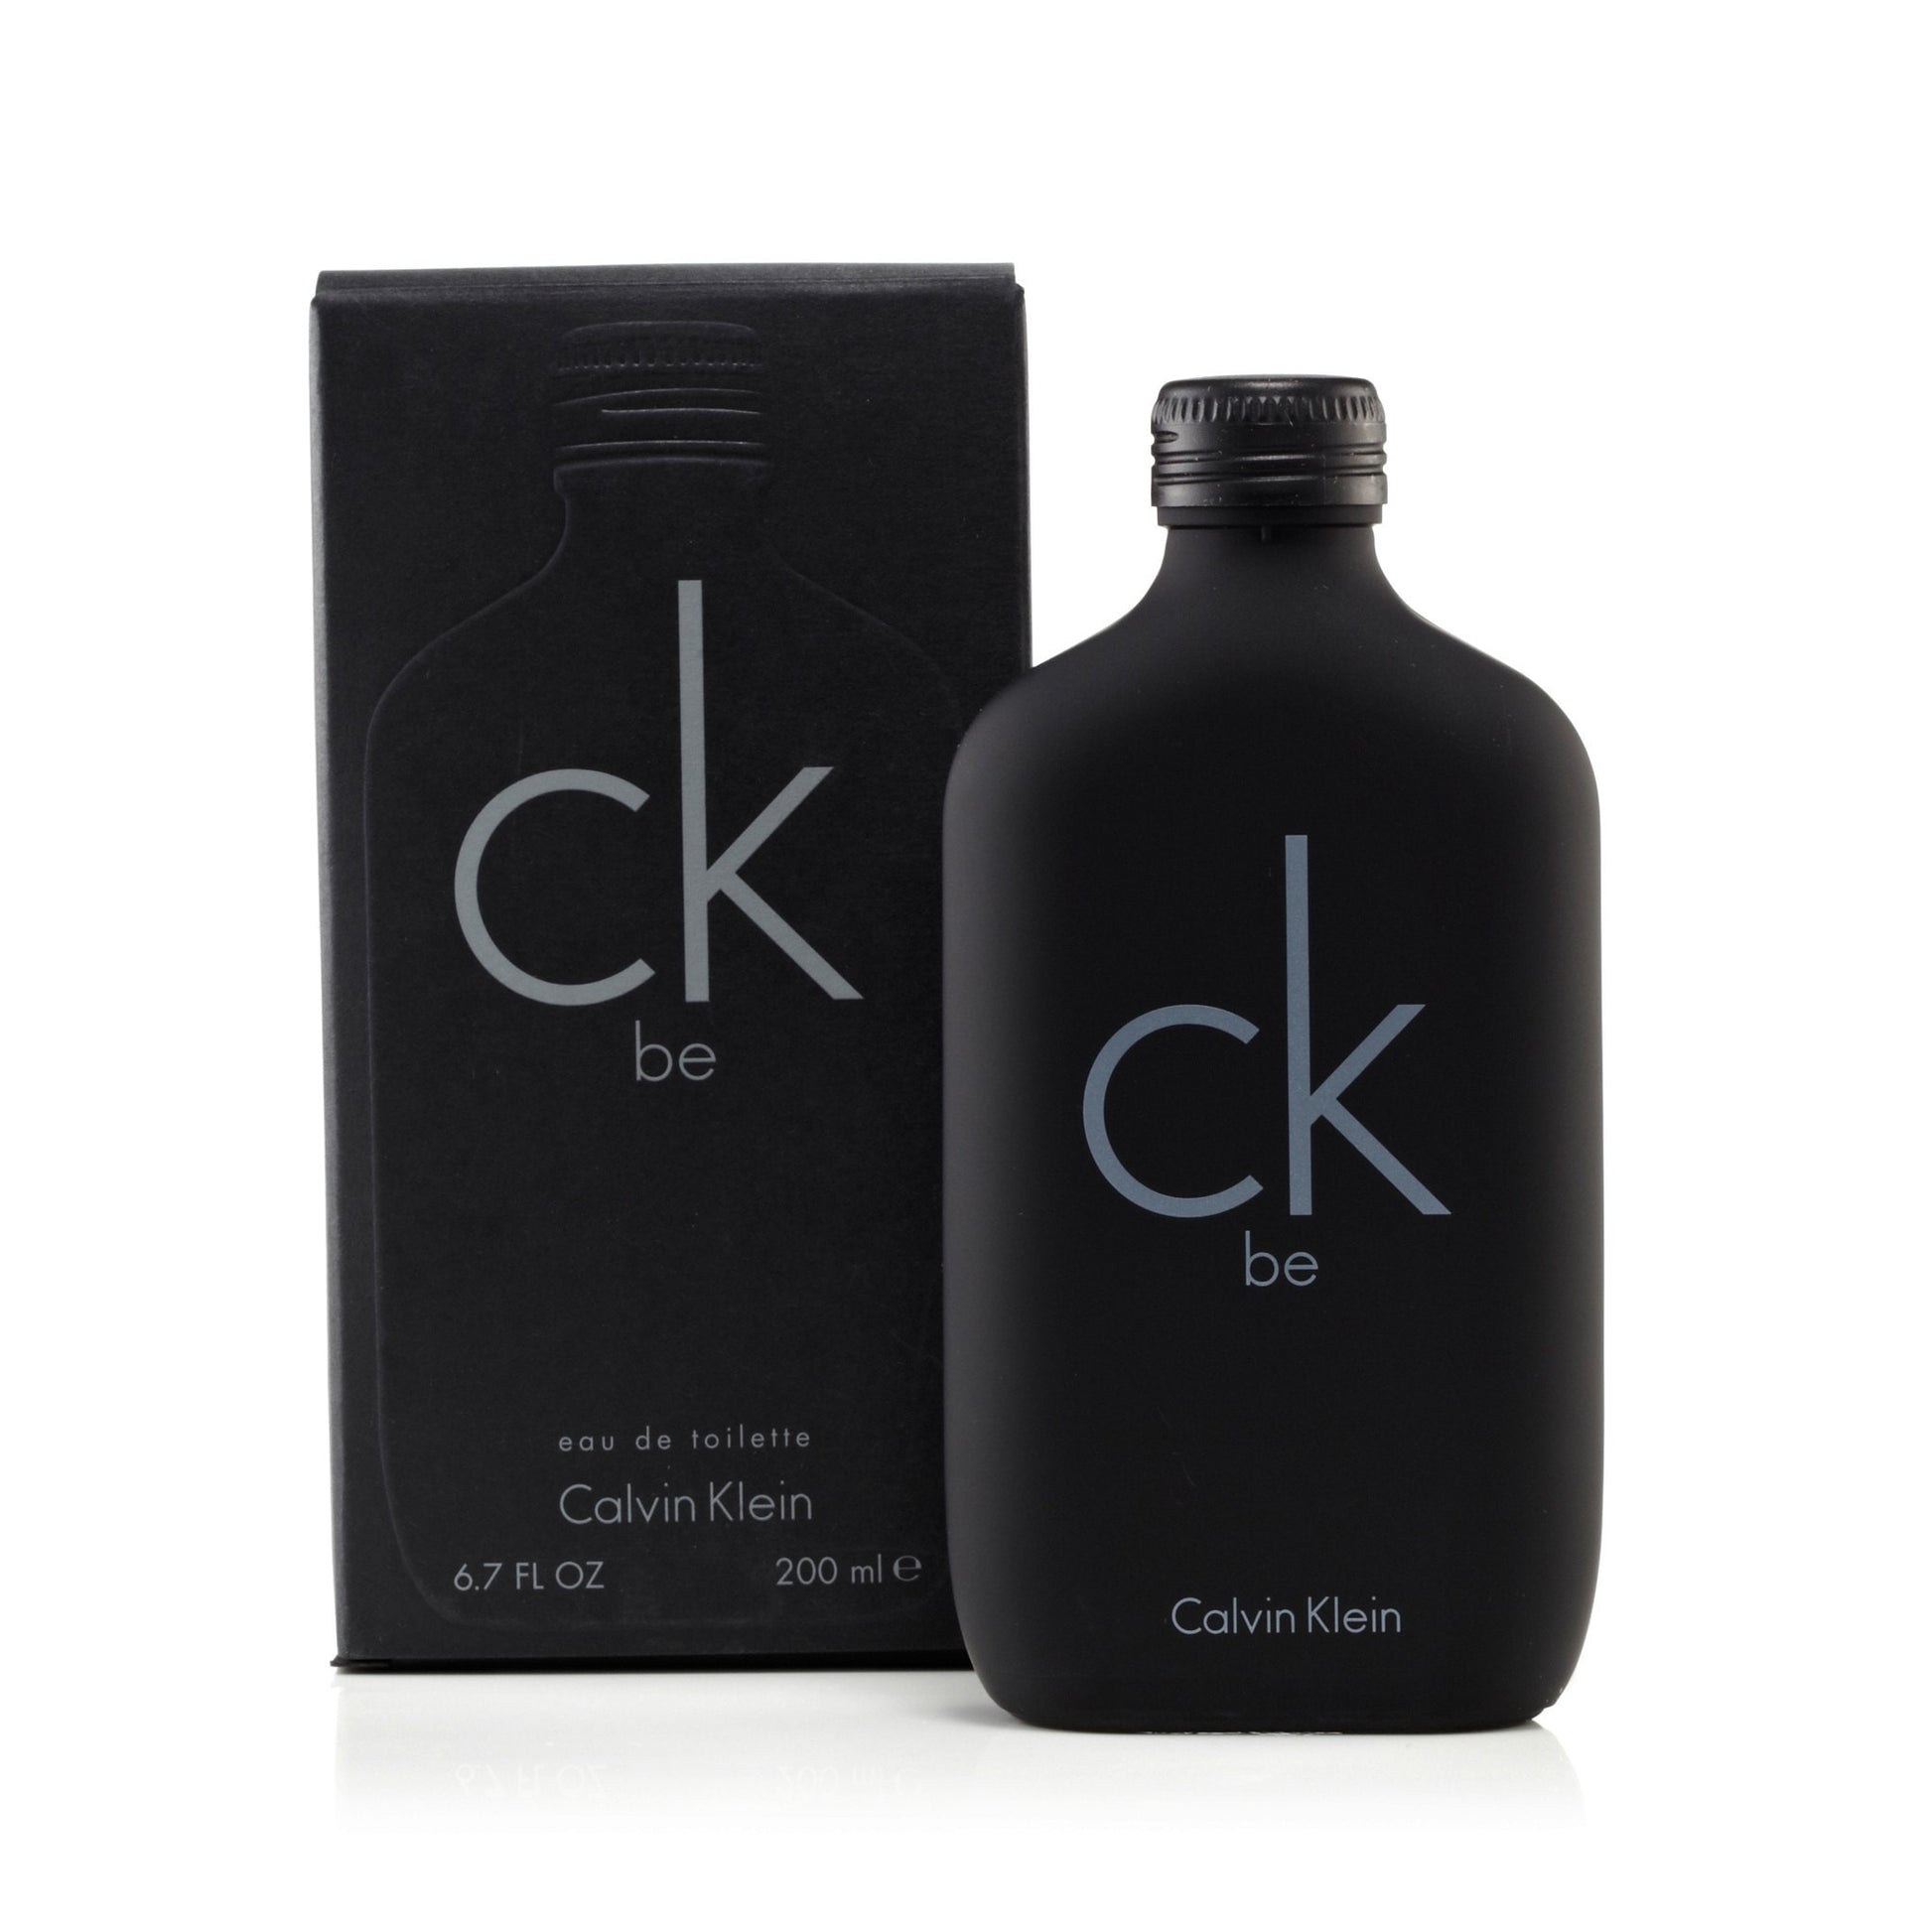 Be Eau de Toilette Spray for Men by Calvin Klein 6.7 oz. Click to open in modal